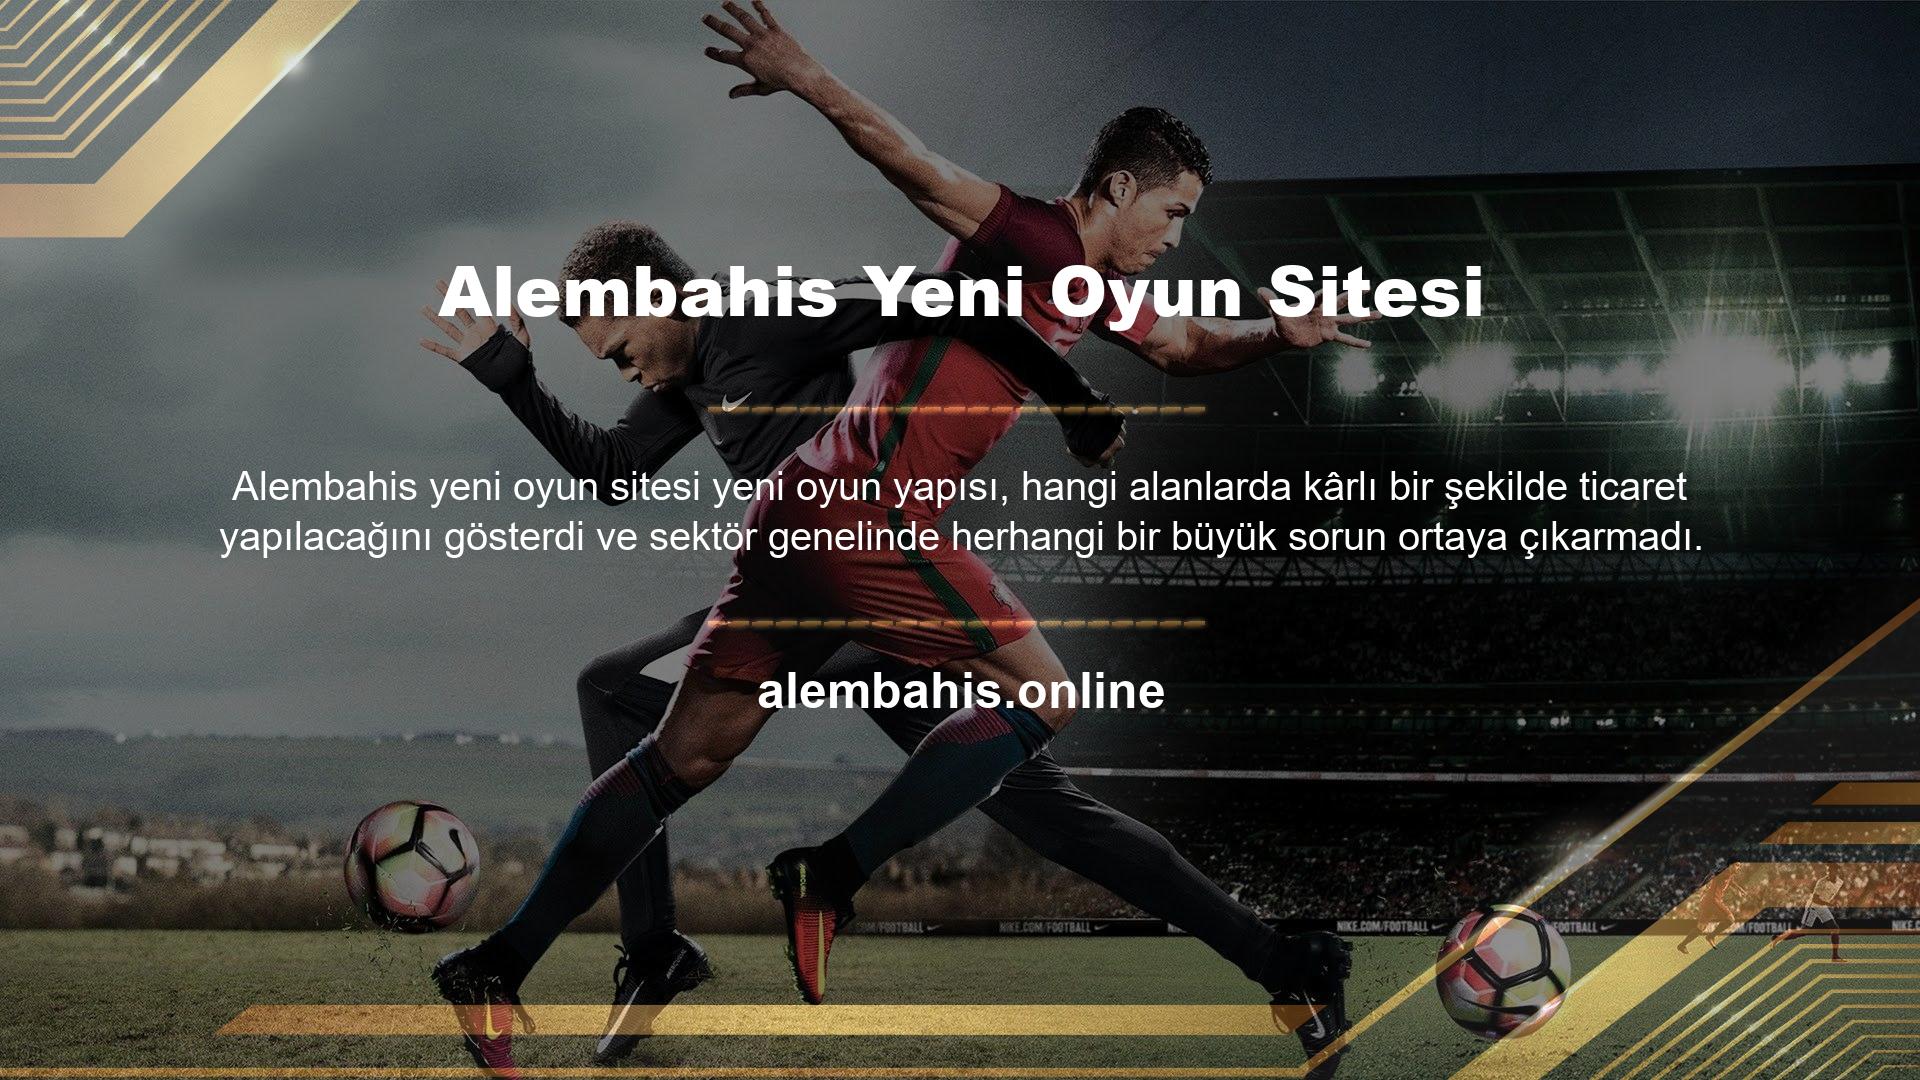 Hatta aktif bilgilere bakıldığında Alembahis Sportsbook müşterilerine güncel futbol değerleri başta olmak üzere 20 farklı sektör için en güncel verileri sunmaktadır